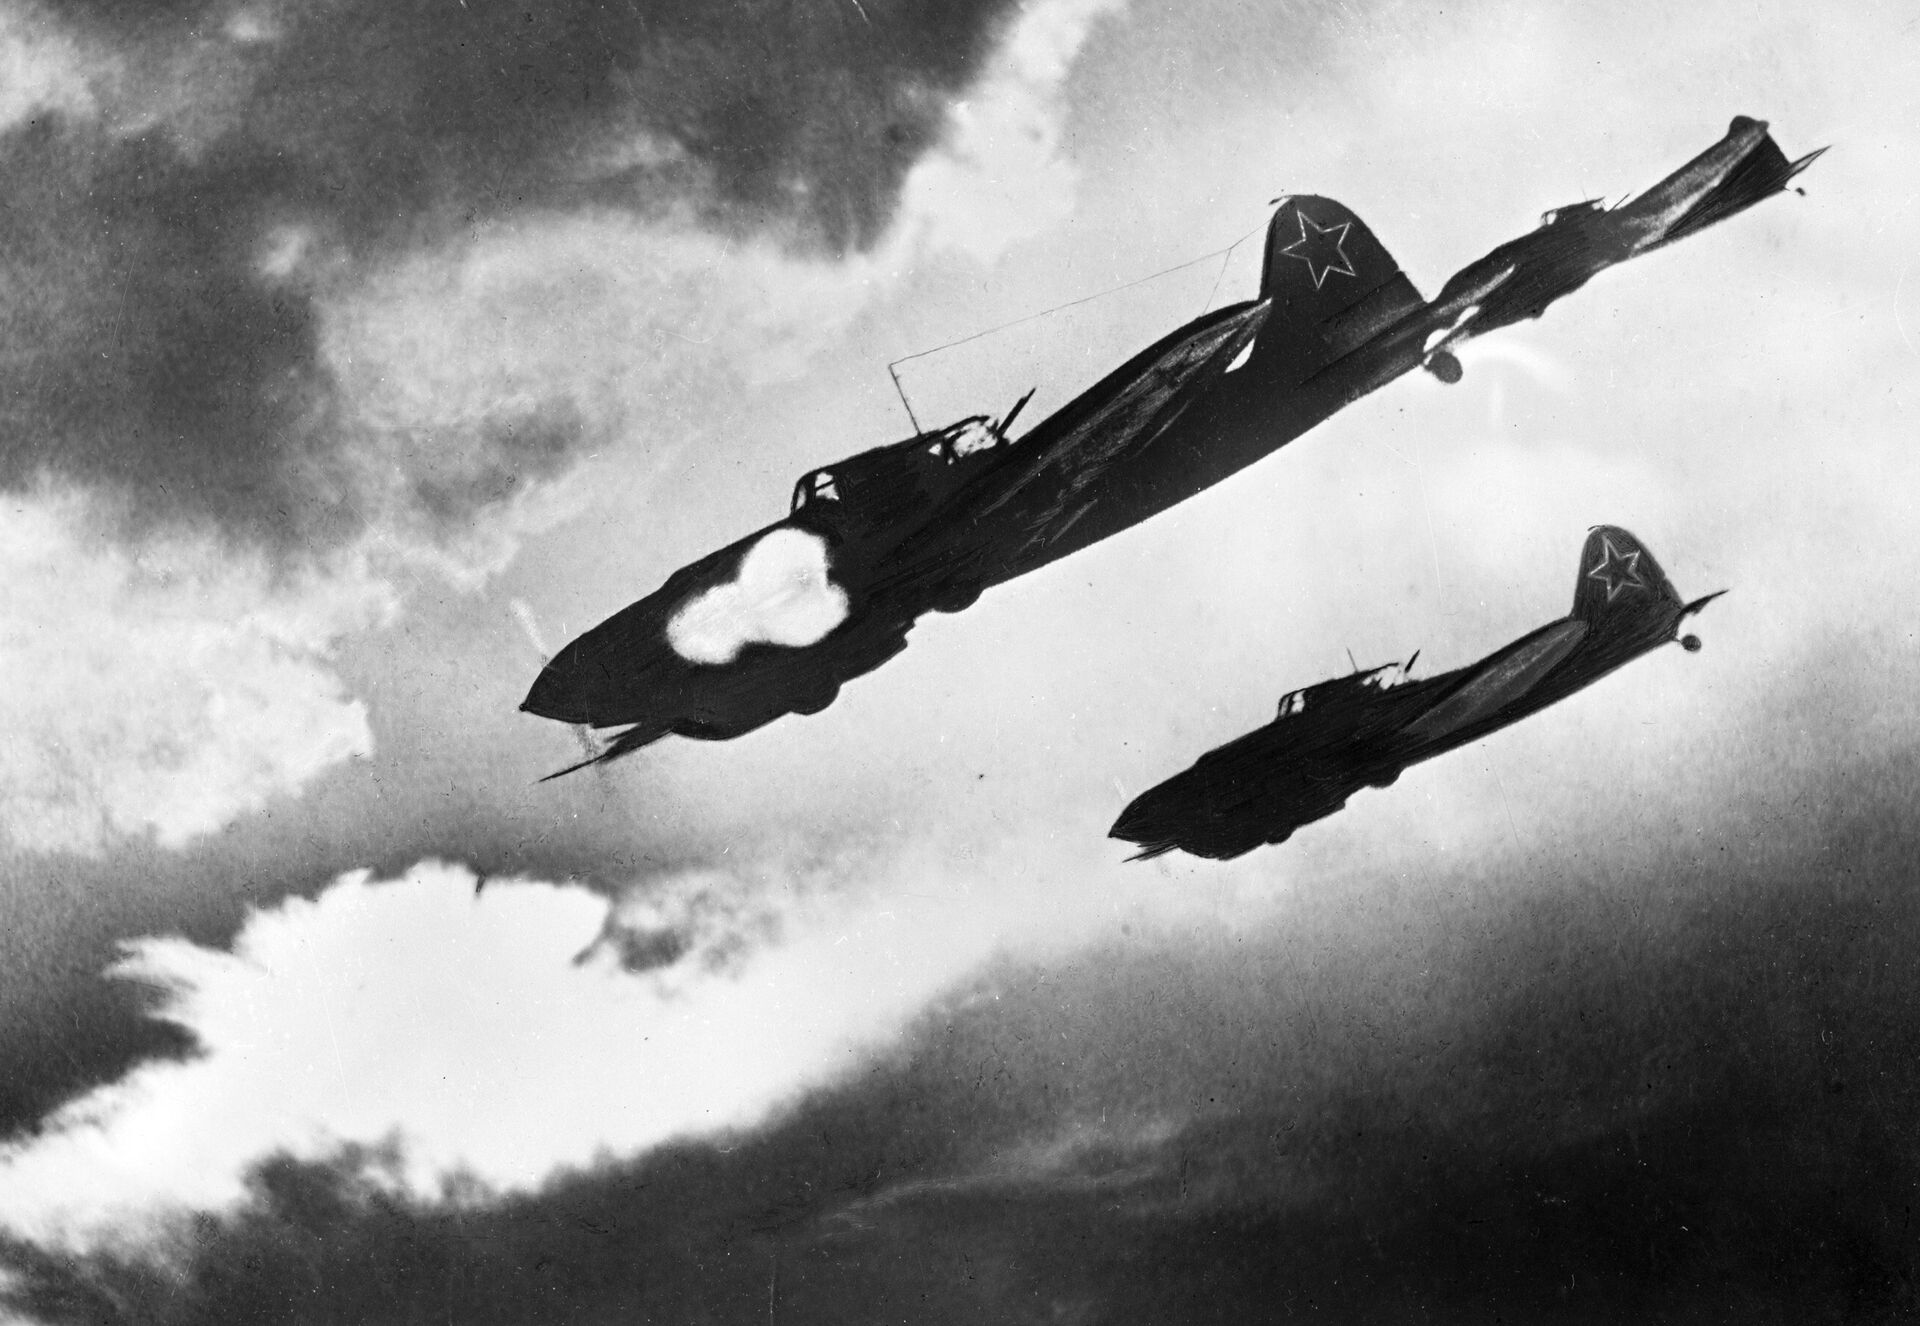 لقبت بـ الجزار أو الموت الطائر... طائرة سوفيتية أرعبت الألمان...صور وفيديو - سبوتنيك عربي, 1920, 10.03.2021